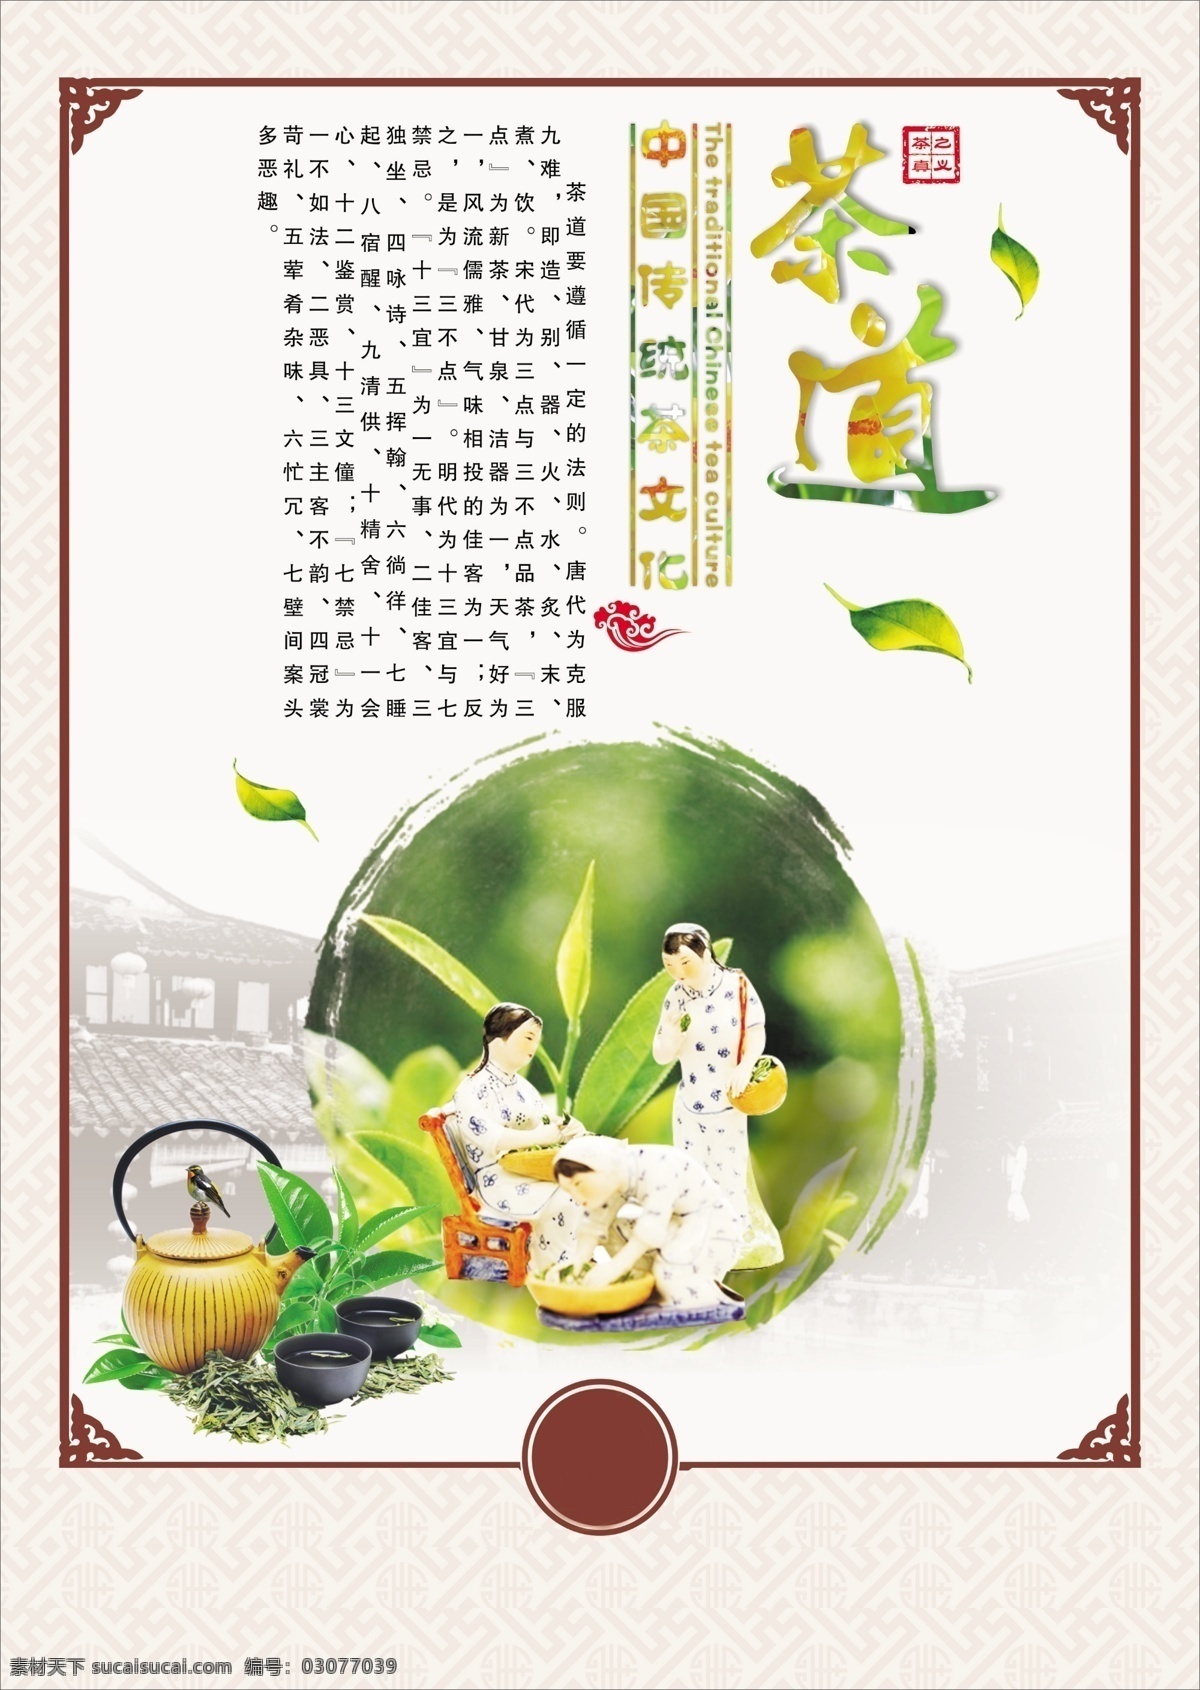 茶道 中国 风 茶文化 海报 茶叶广告 茶叶海报 茶叶素材 茶具素材 茶叶包装 茶叶图片 茶叶展板 茶叶专题 白色